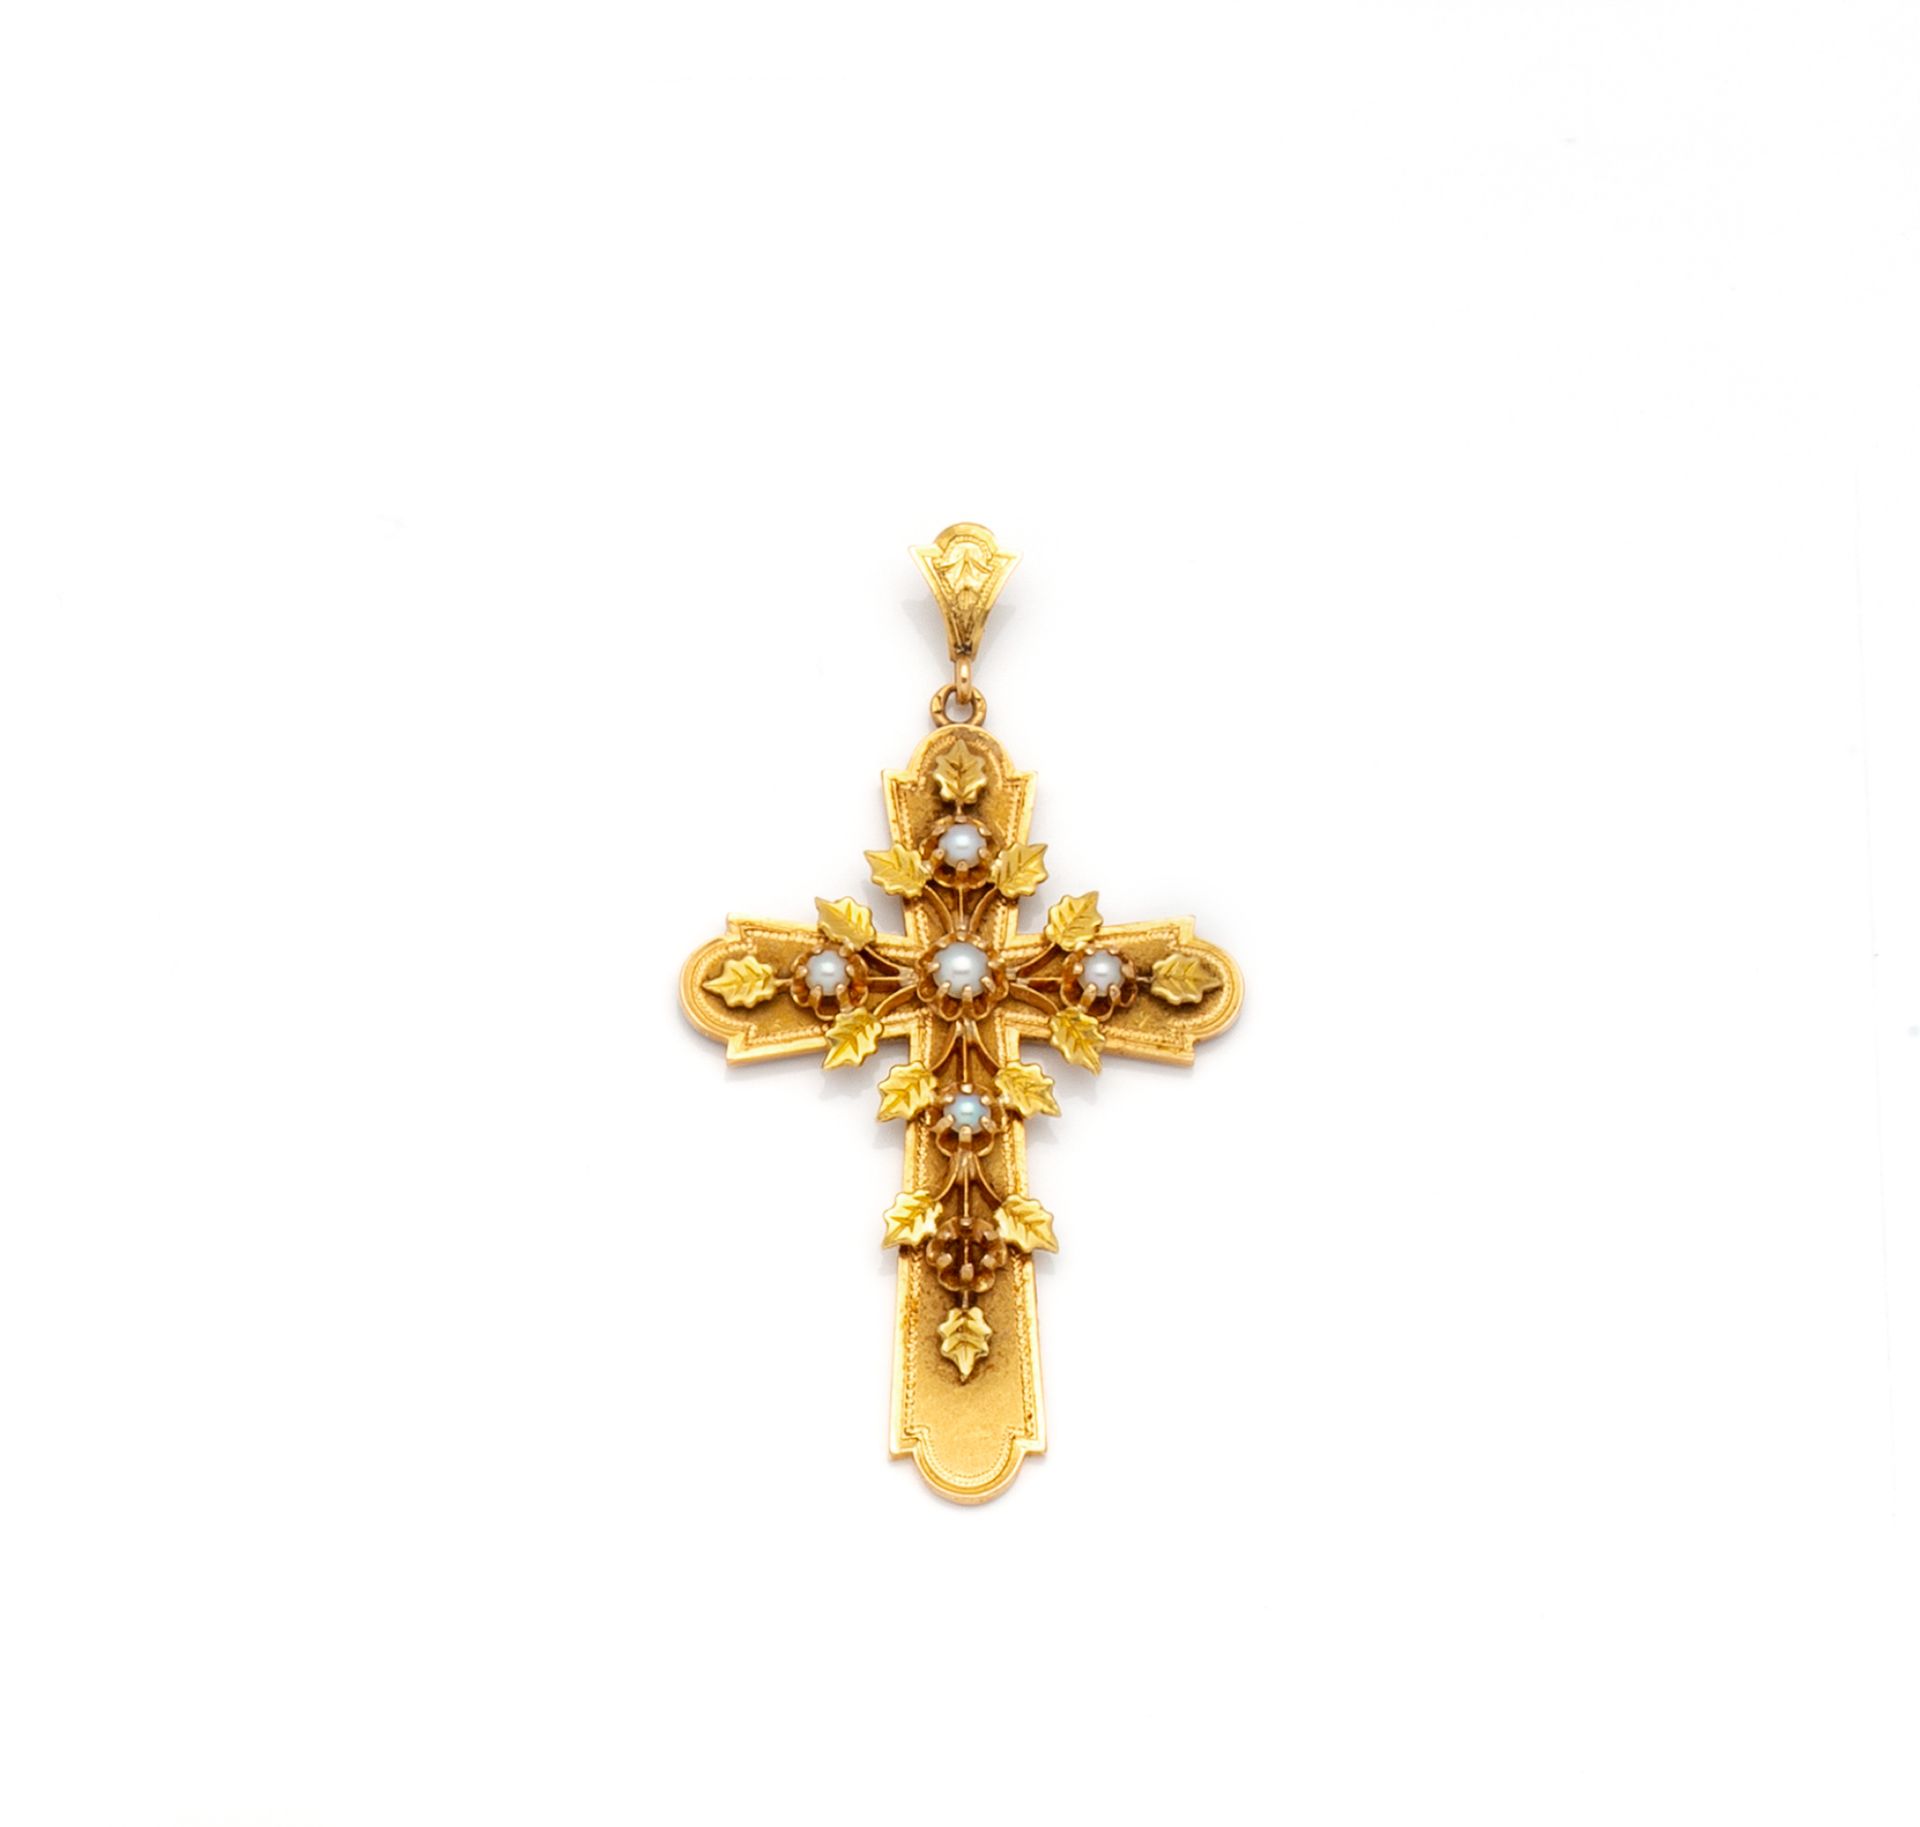 Null 18K(750/1000)黄金十字架吊坠，橡树叶和5颗珍珠的爪镶叶设计。移动扣。

法国的工作。

尺寸：52 x 34 mm - 毛重：8.35 g&hellip;